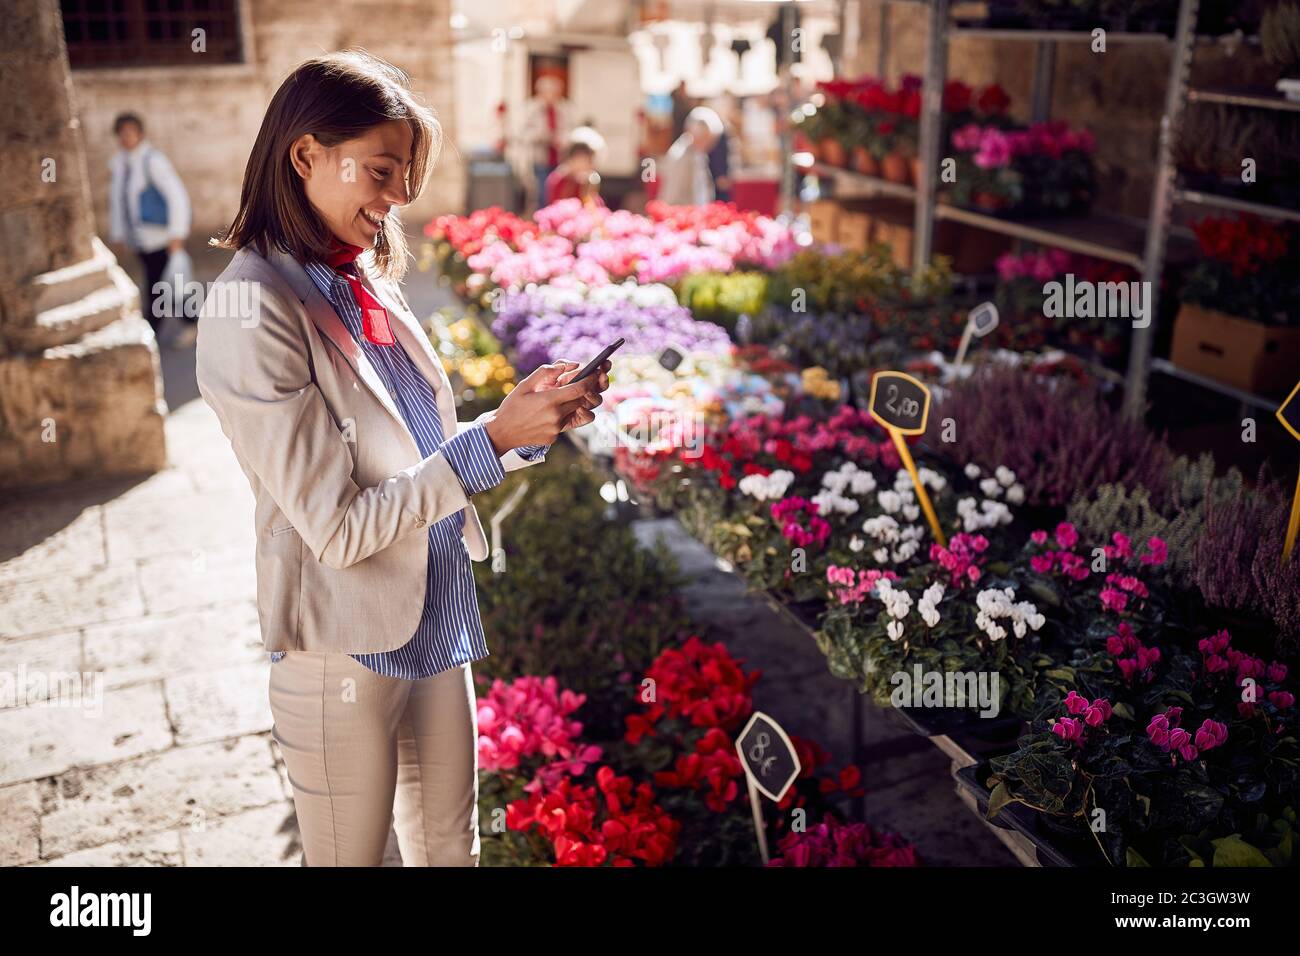 Belle jeune femme textant sur son téléphone cellulaire, souriant, devant la boutique de fleurs, Italie, Toscane Banque D'Images